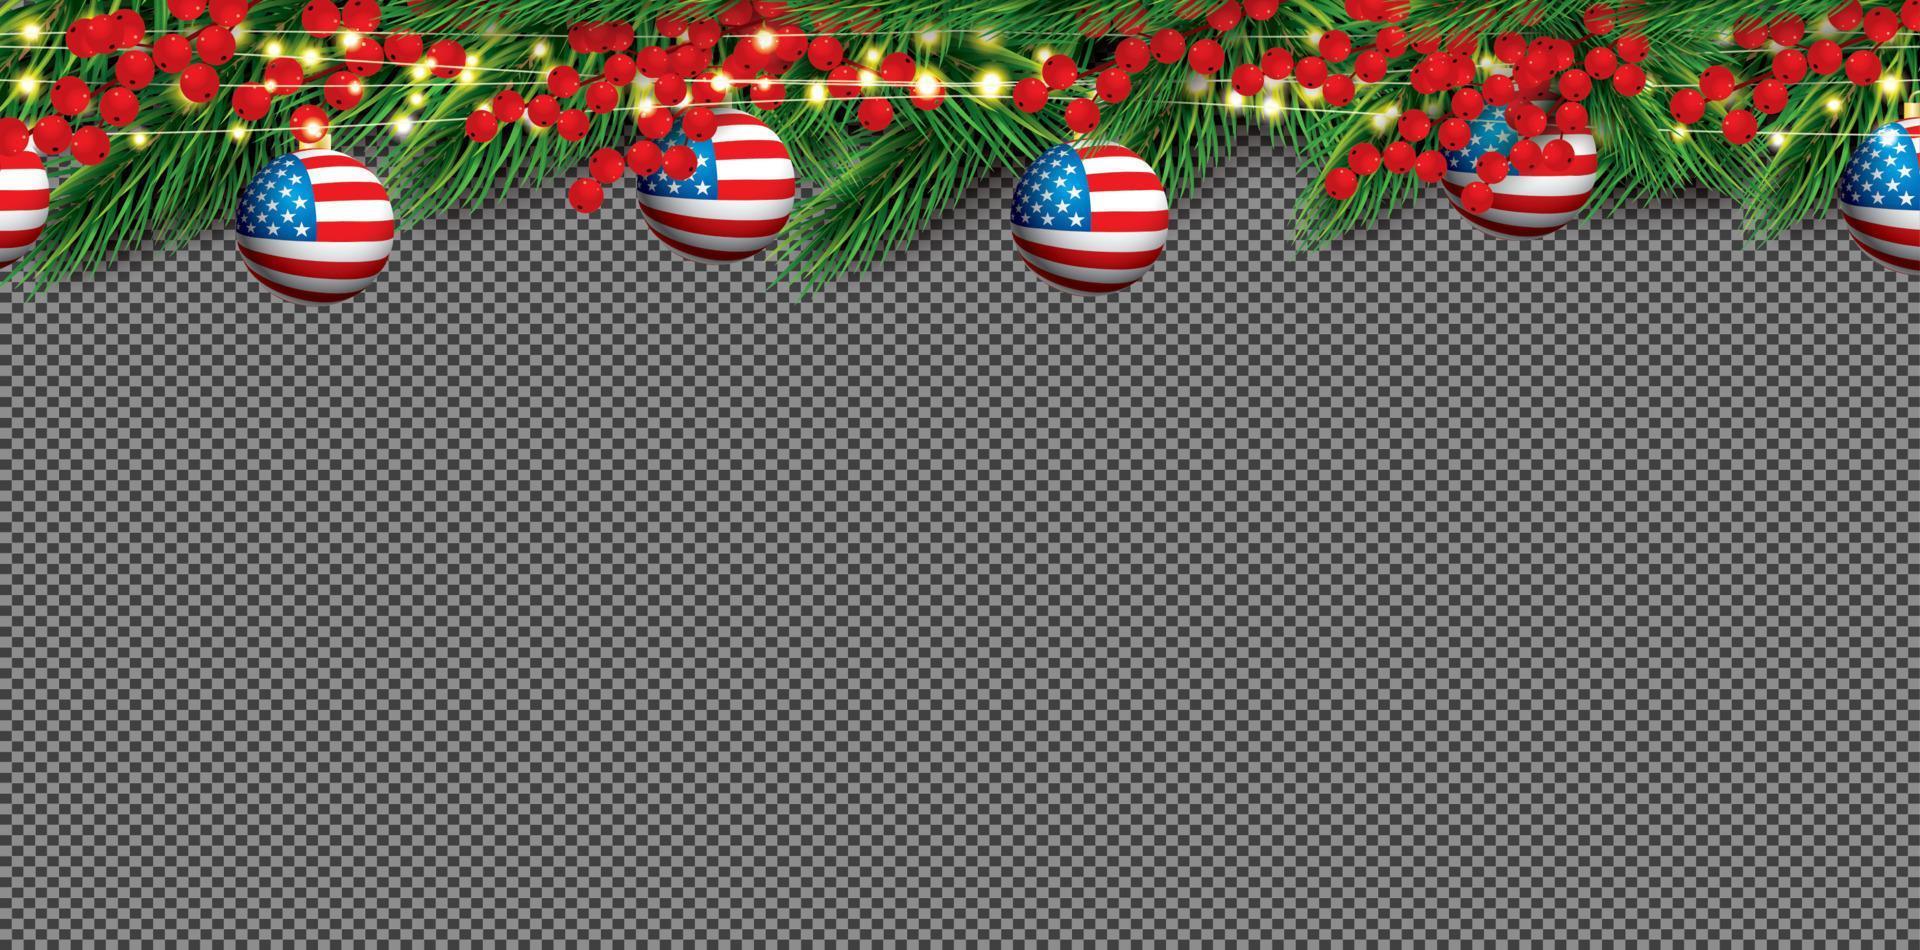 Kerstmis grens met Spar takken, hulst bessen en ballen met Verenigde Staten van Amerika vlag. vector